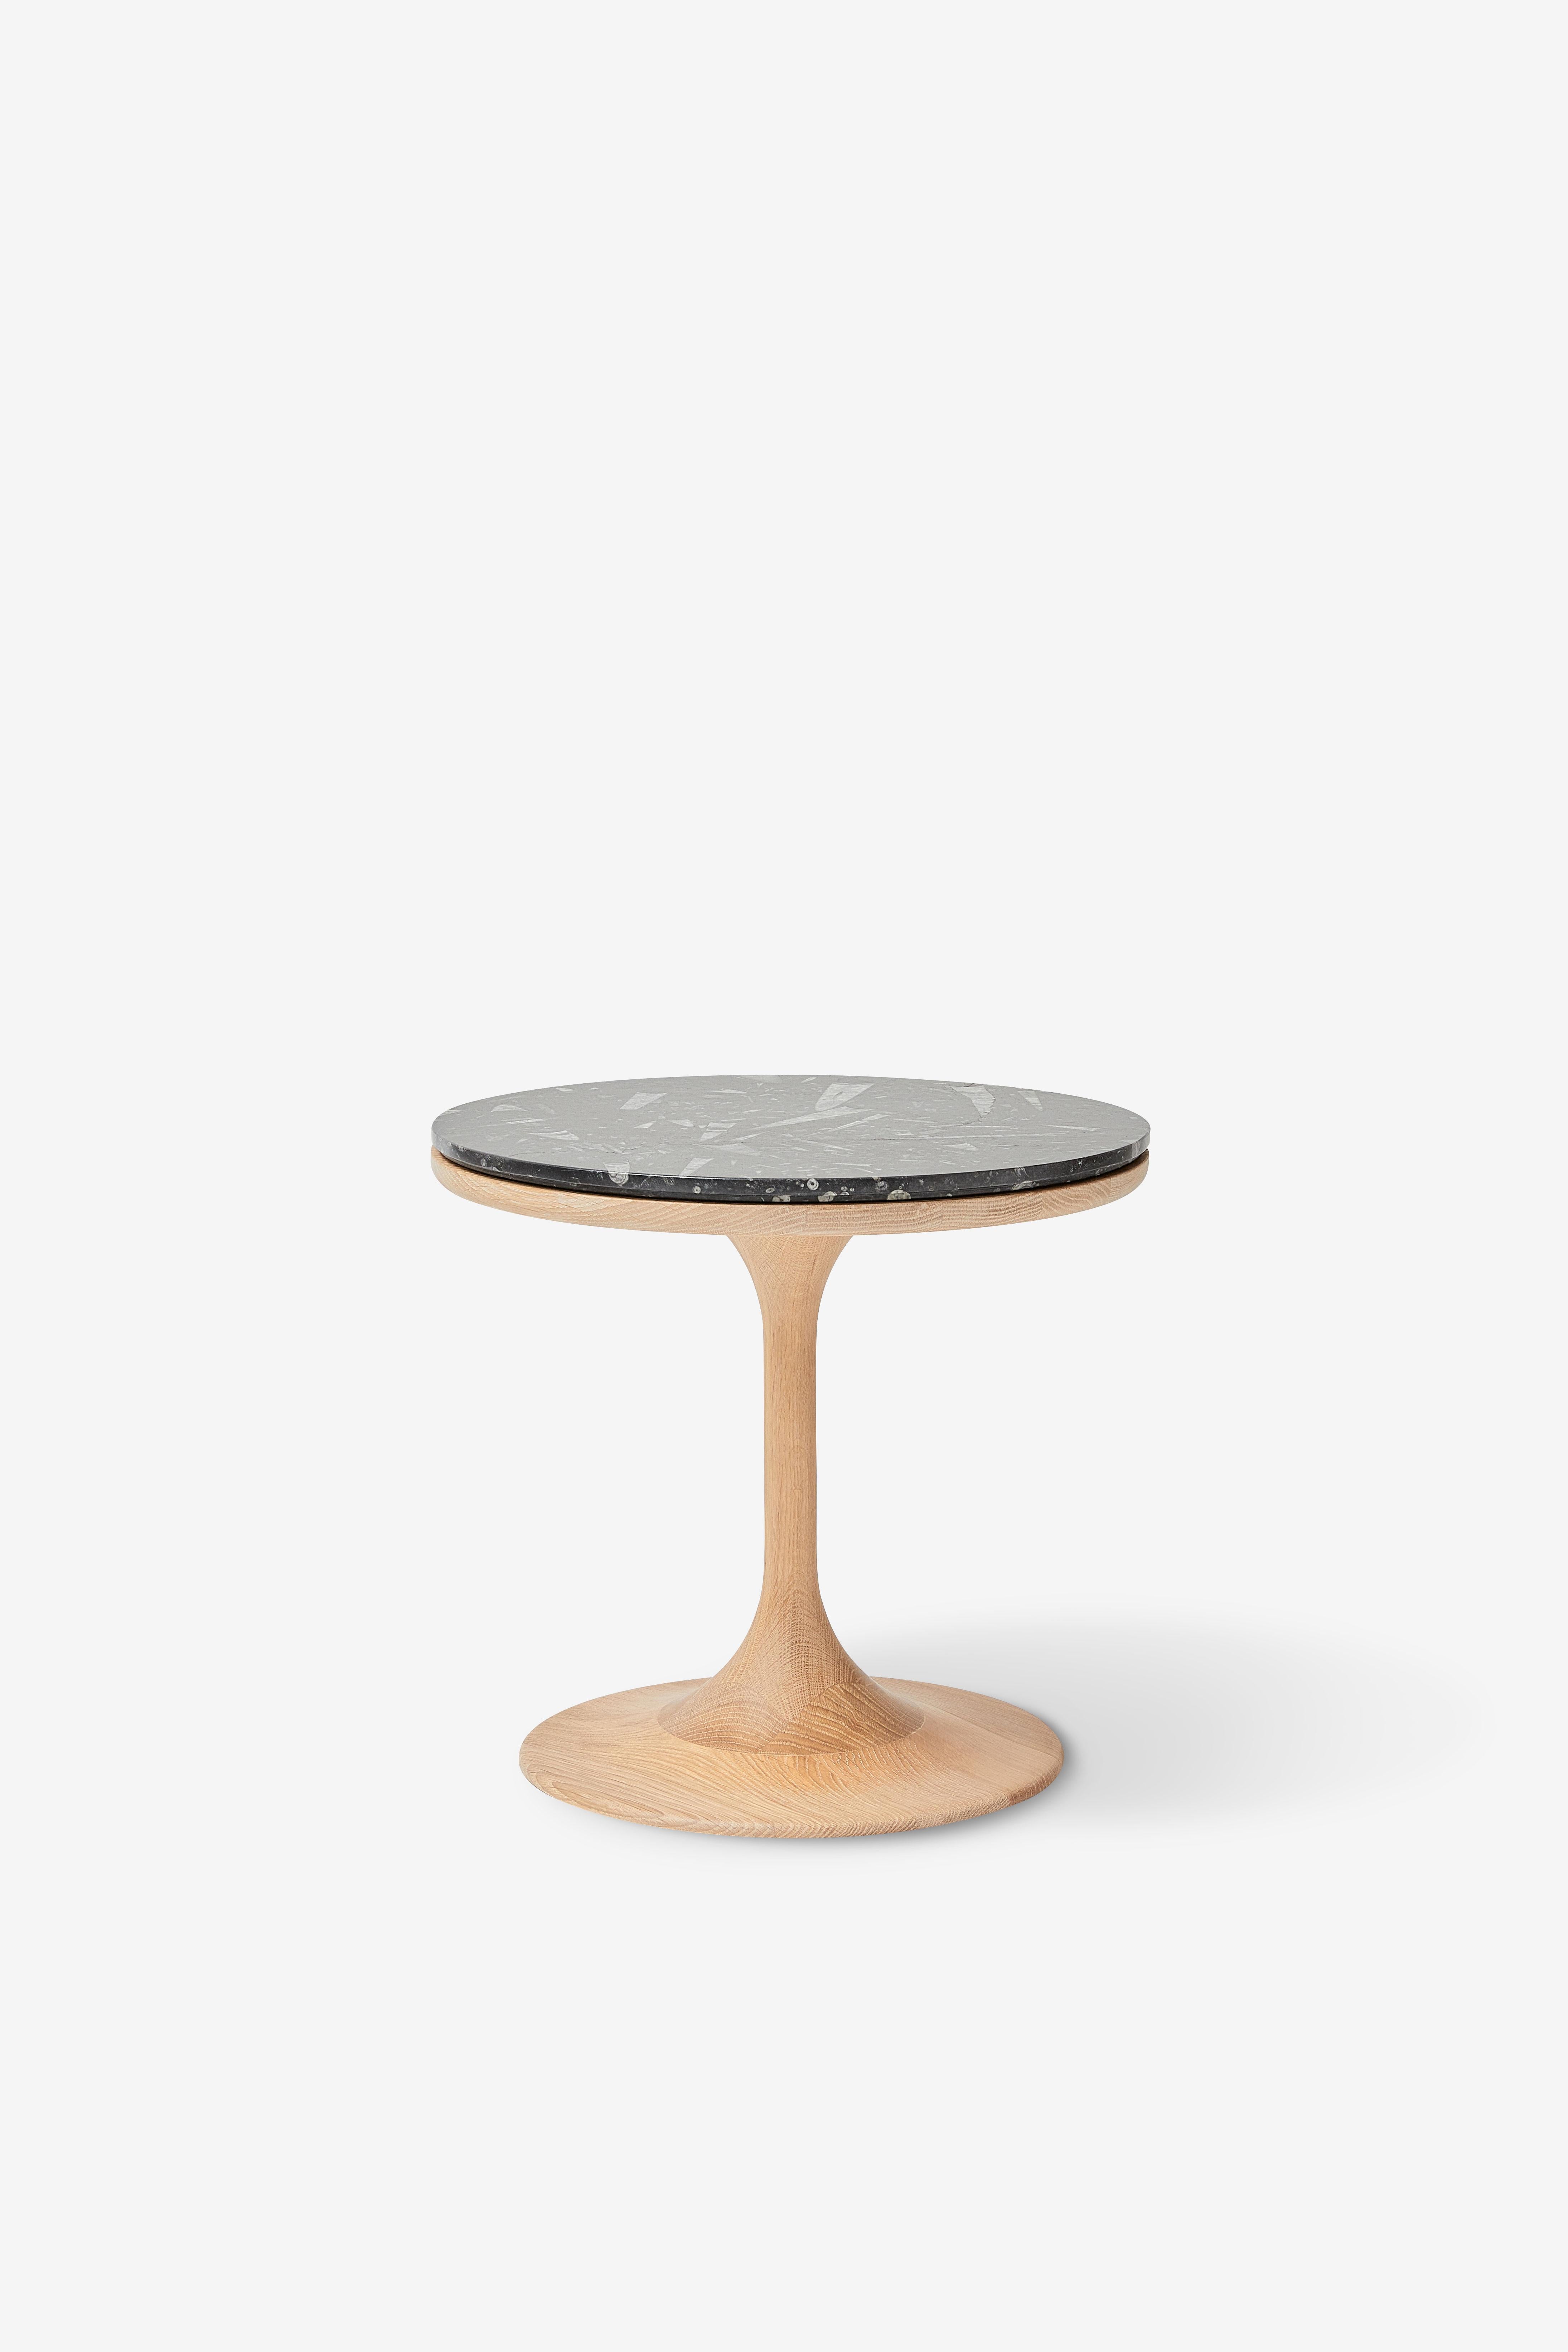 MG203 side table in oak by Malte Gormsen Designed by Space Copenhagen For Sale 1